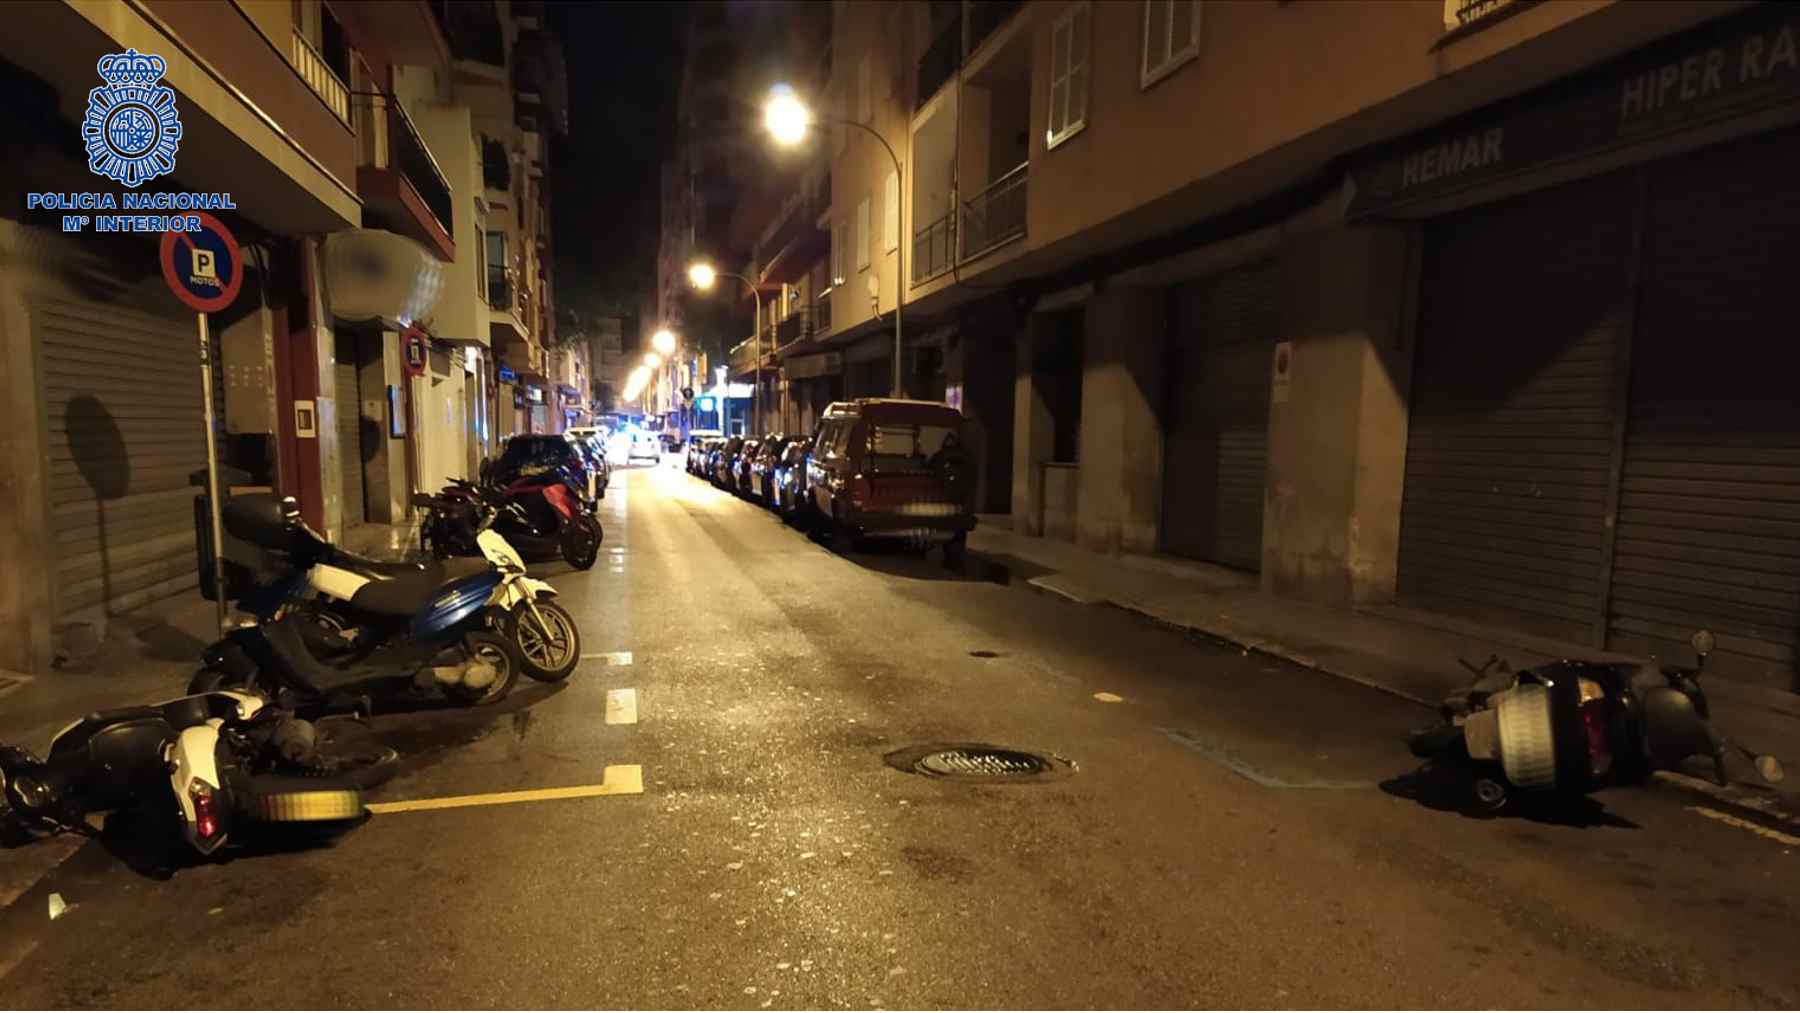 Motos tiradas al suelo en una calle del barrio de Bons AIres en Palma. POLICÍA NACIONAL